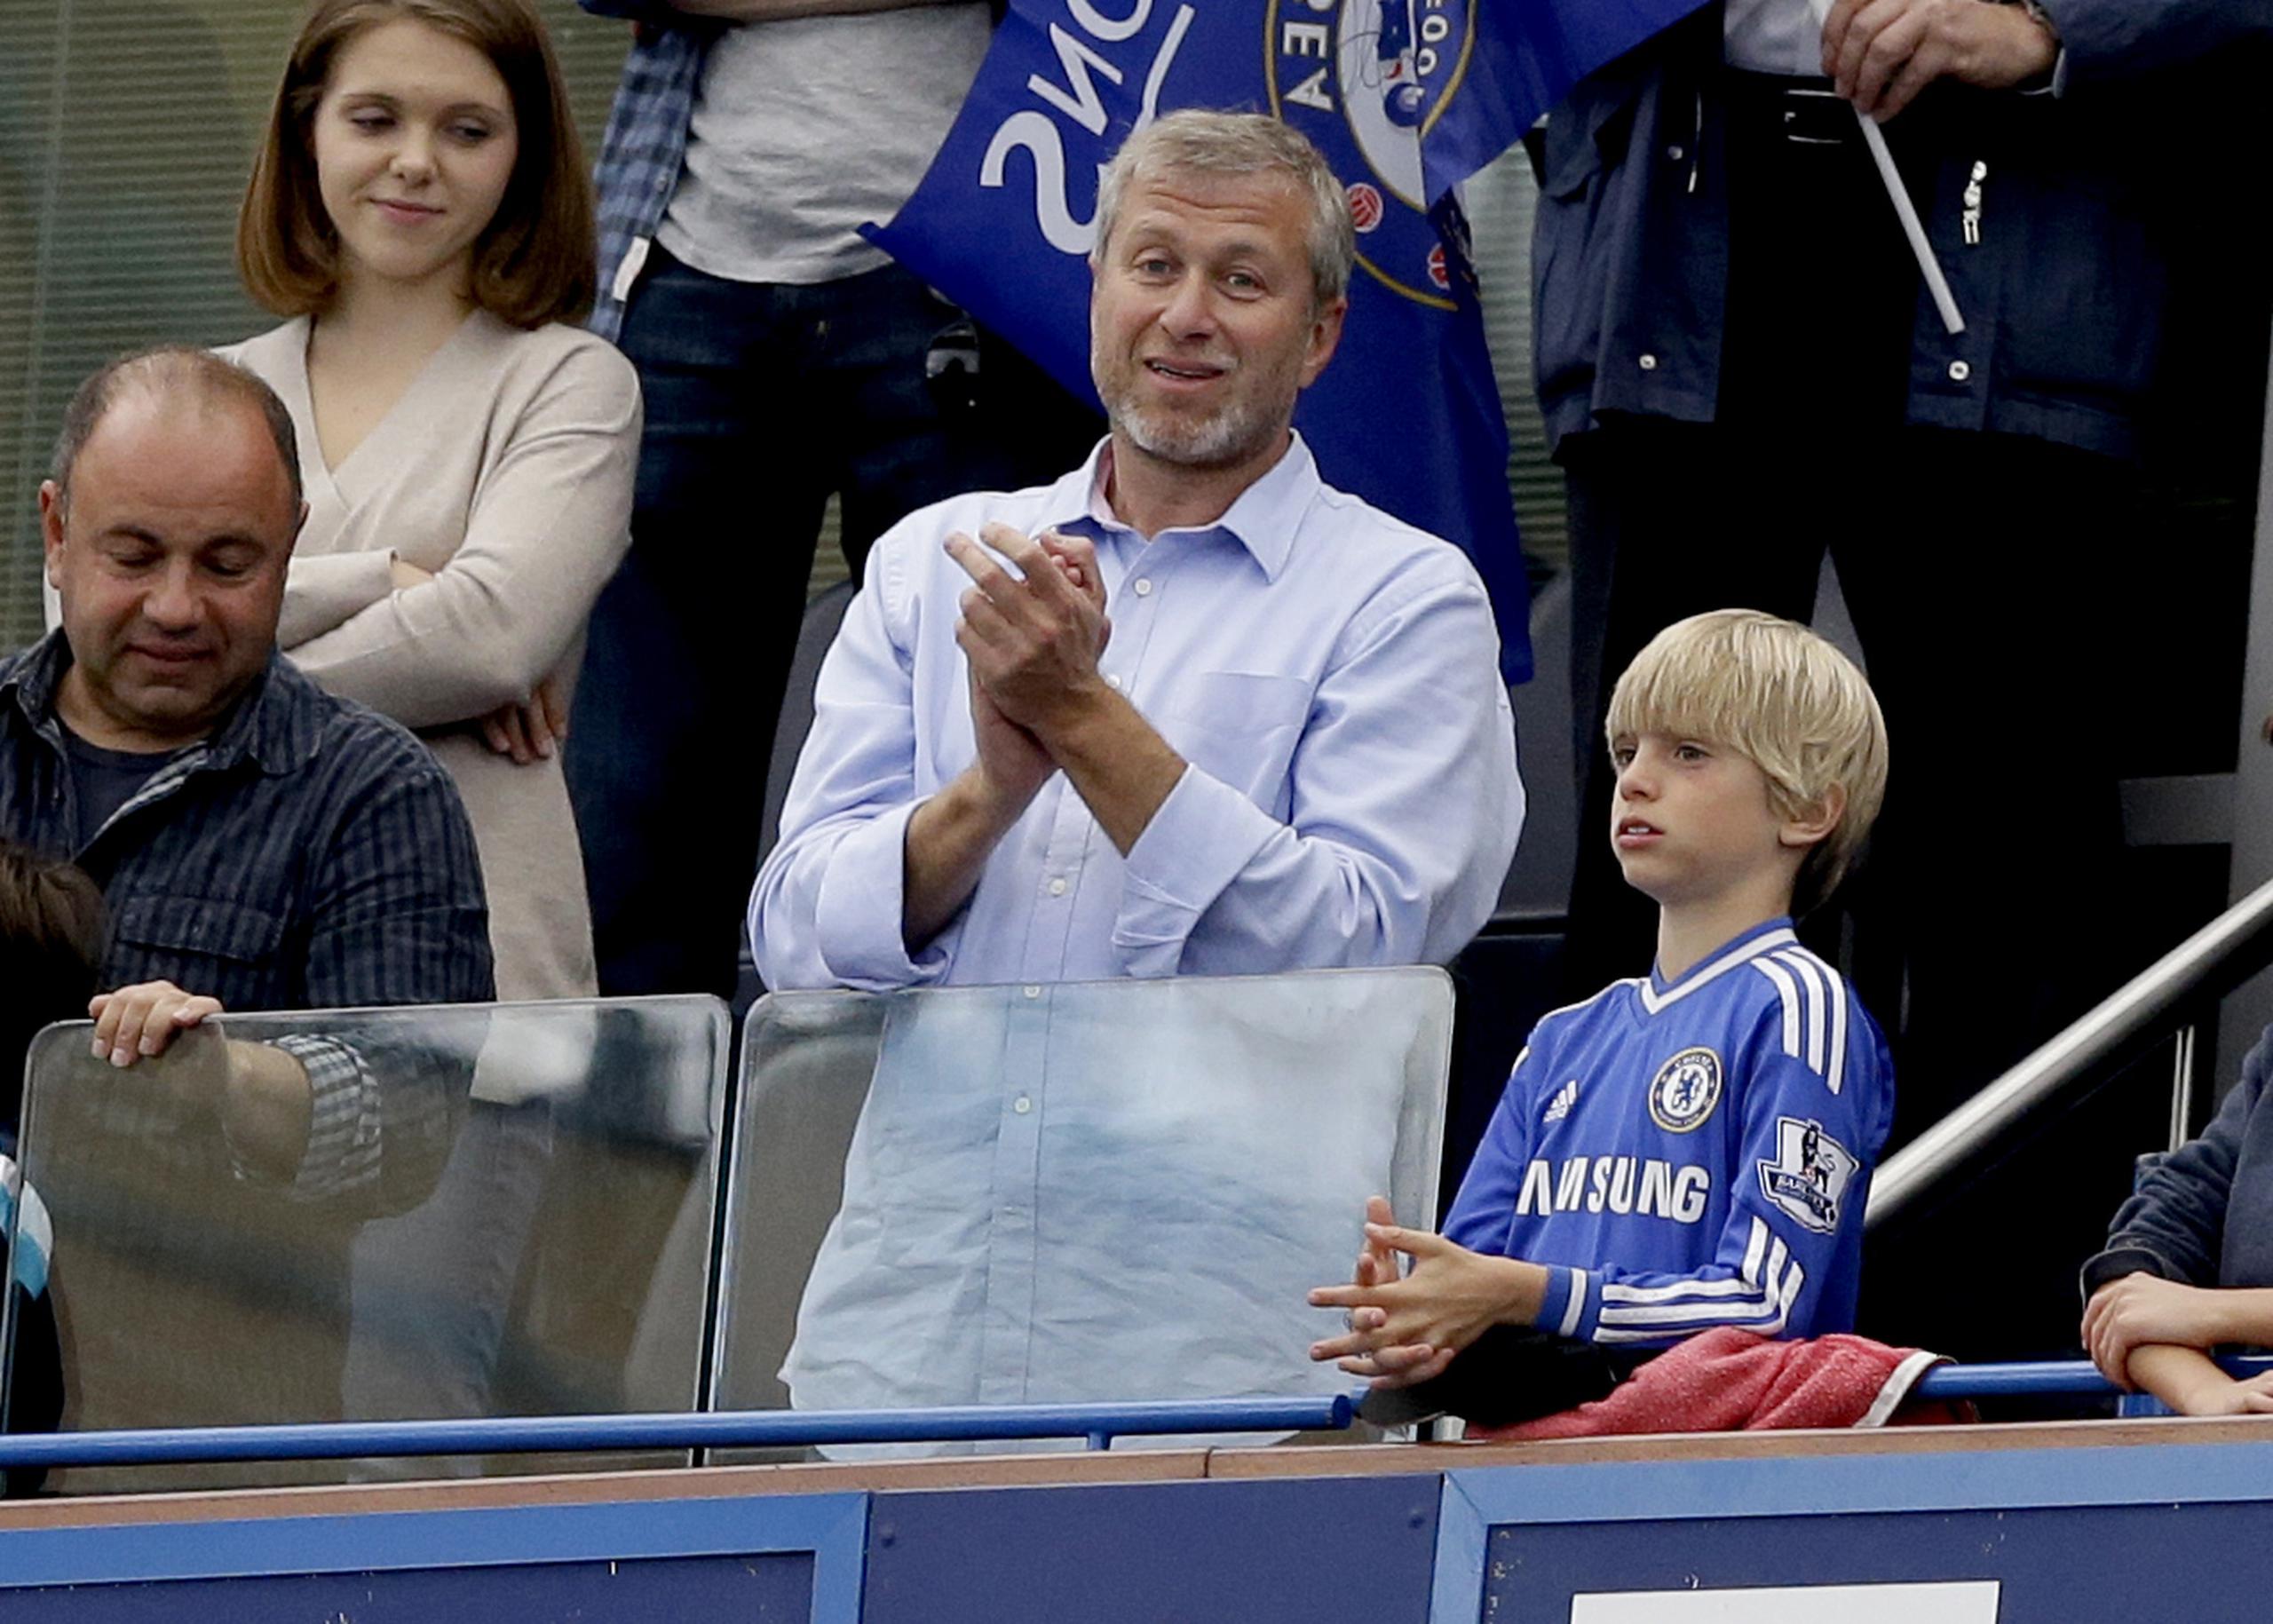 El propietario del Chelsea FC de la Liga Premier, el ruso Roman Abramovich, cedió el control del equipo el sábado luego de que el parlamento británico se lo solicitó.